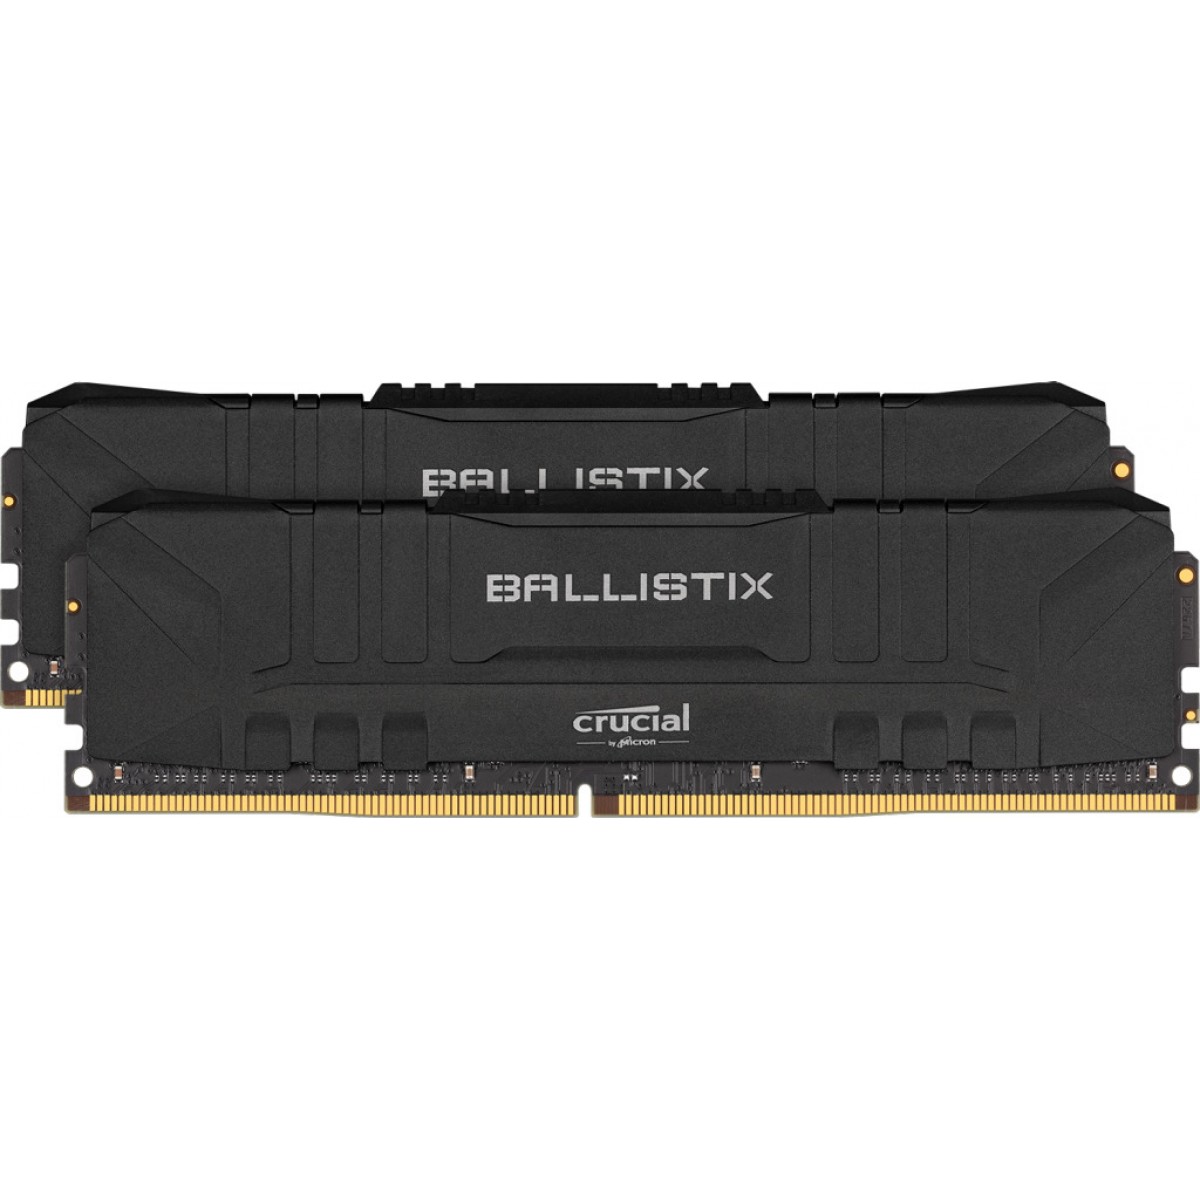 RAM CRUCIAL BALLISTIX 2Χ8G DDR4 3000MHz BL2K8G30C15U4B